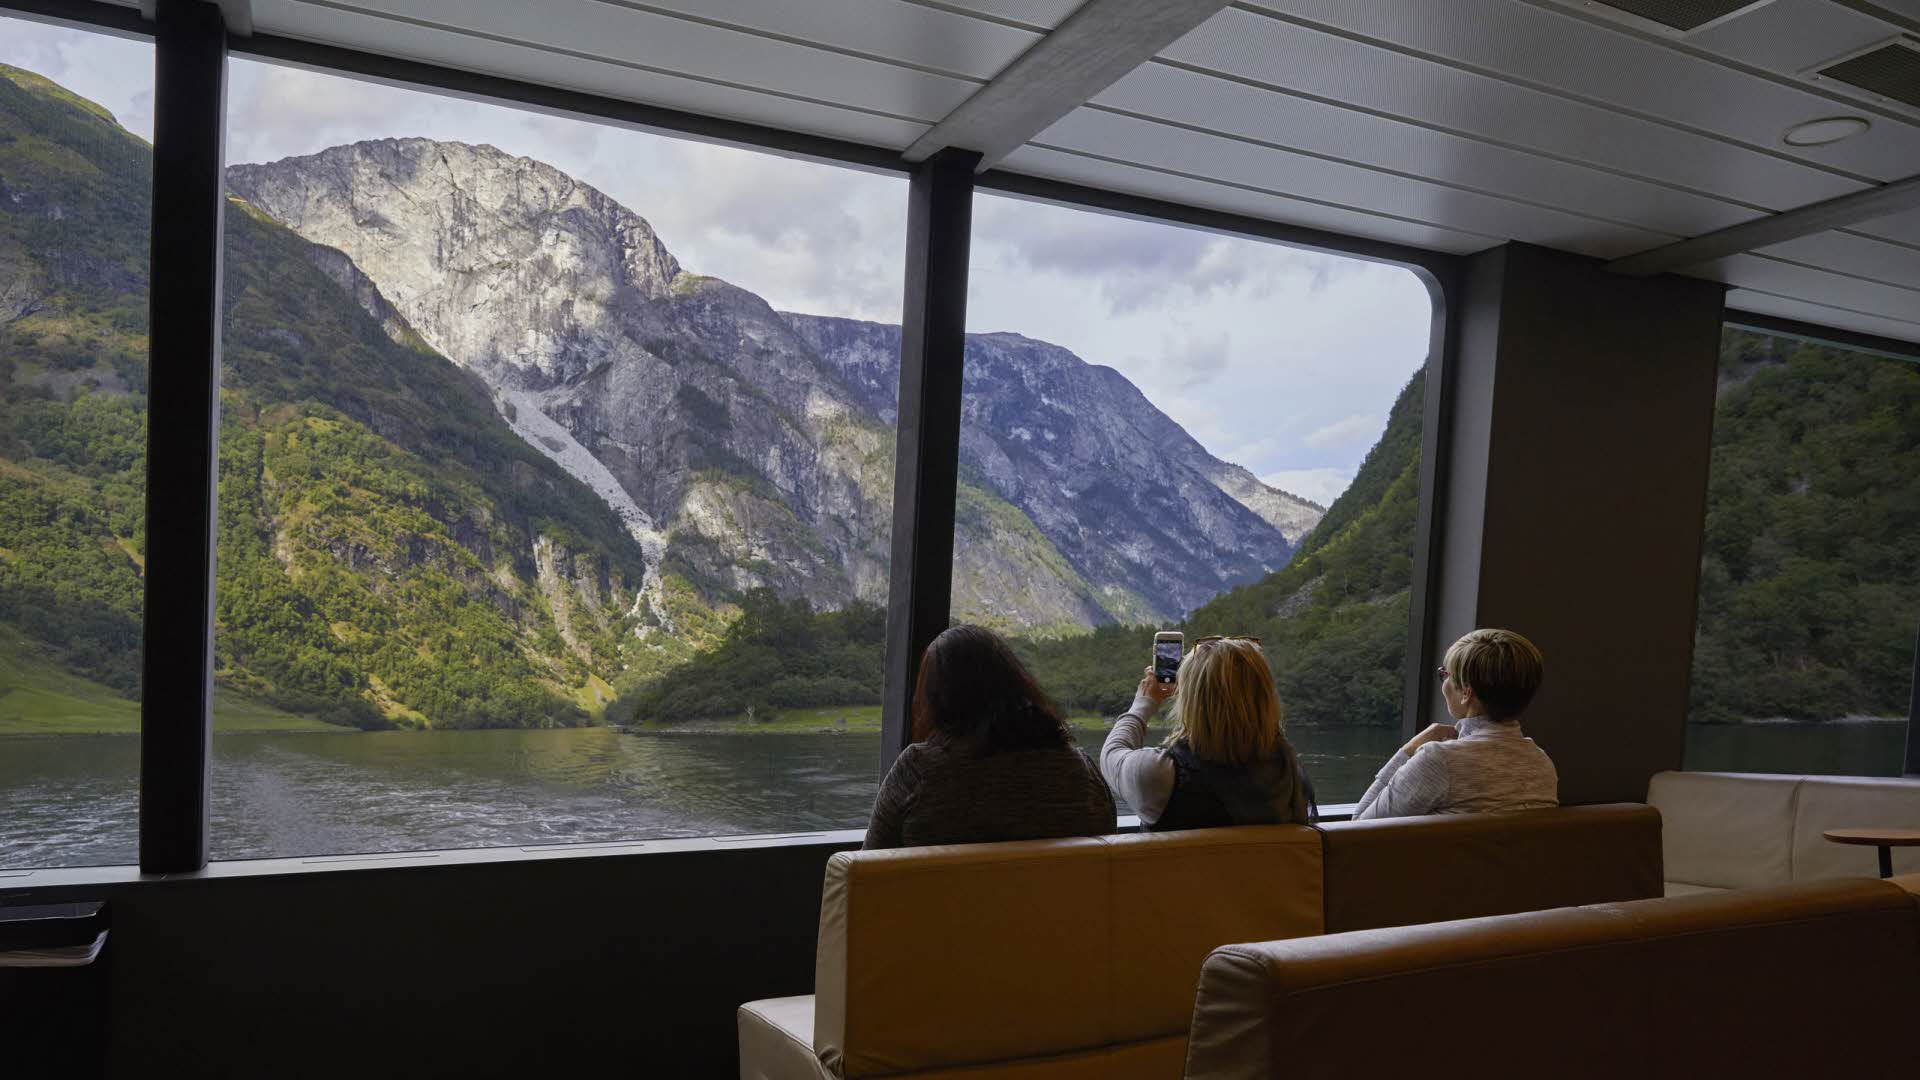 フューチャーオブフィヨルド船内でネーロイフィヨルド(Naeroyfjord) の風景を大きなパノラマ窓から撮影する3人の女友達